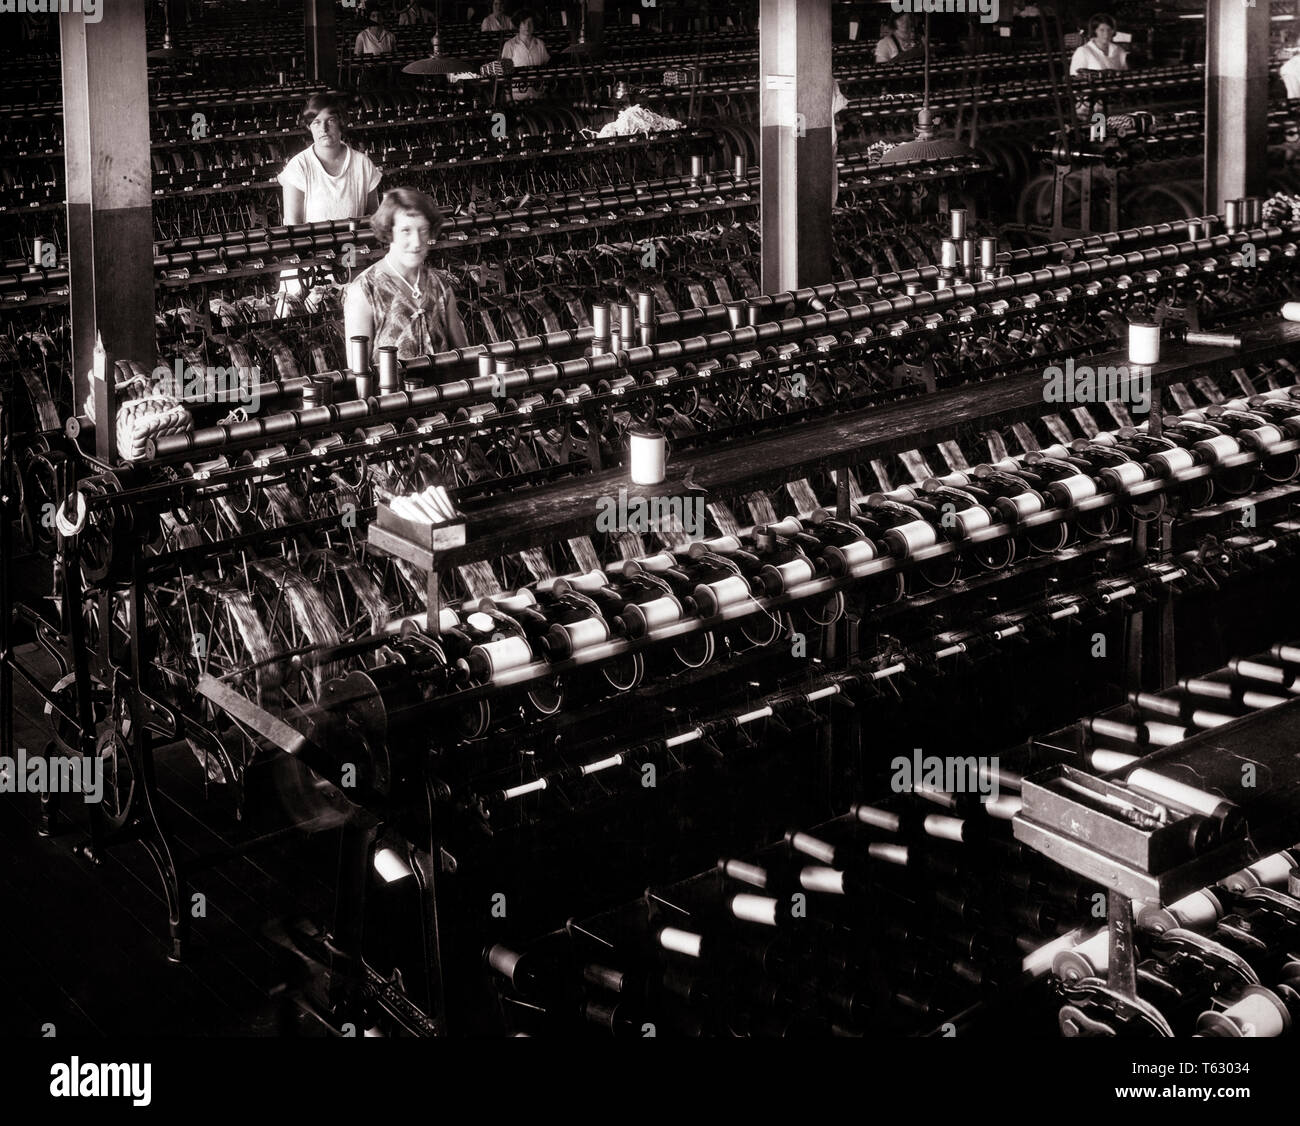 1920 dos mujeres trabajadores textiles mirando a la cámara en grandes máquinas de hilado de seda INTERIOR INDUSTRIAL ARROJANDO FACTORY - q74727 CPC001 HARS arrojando centro industrial SEGURIDAD HISTORIA LIFESTYLE MUJERES SPINNING EMPLEOS PERSONA ESTADOS UNIDOS longitud media estimadas PERSONAS TELA CRECIDO RIESGO B&W TEXTIL TRISTEZA NORTEAMÉRICA CONTACTO OCULAR DECORACIÓN Decoración habilidades NORTEAMERICANO SUEÑOS OCUPACIÓN MATERIAL HABILIDADES CENTRO URBANO MÁQUINAS PA NORESTE DE KEYSTONE ocupaciones laborales en la región del Atlántico Medio región del Atlántico medio del Commonwealth COSTA ORIENTAL CONCEPTUAL ESCAPAR ESTADO TRAPEZOIDAL TEXTILES BOBINAS MEDIADOS DE ADULTO Foto de stock